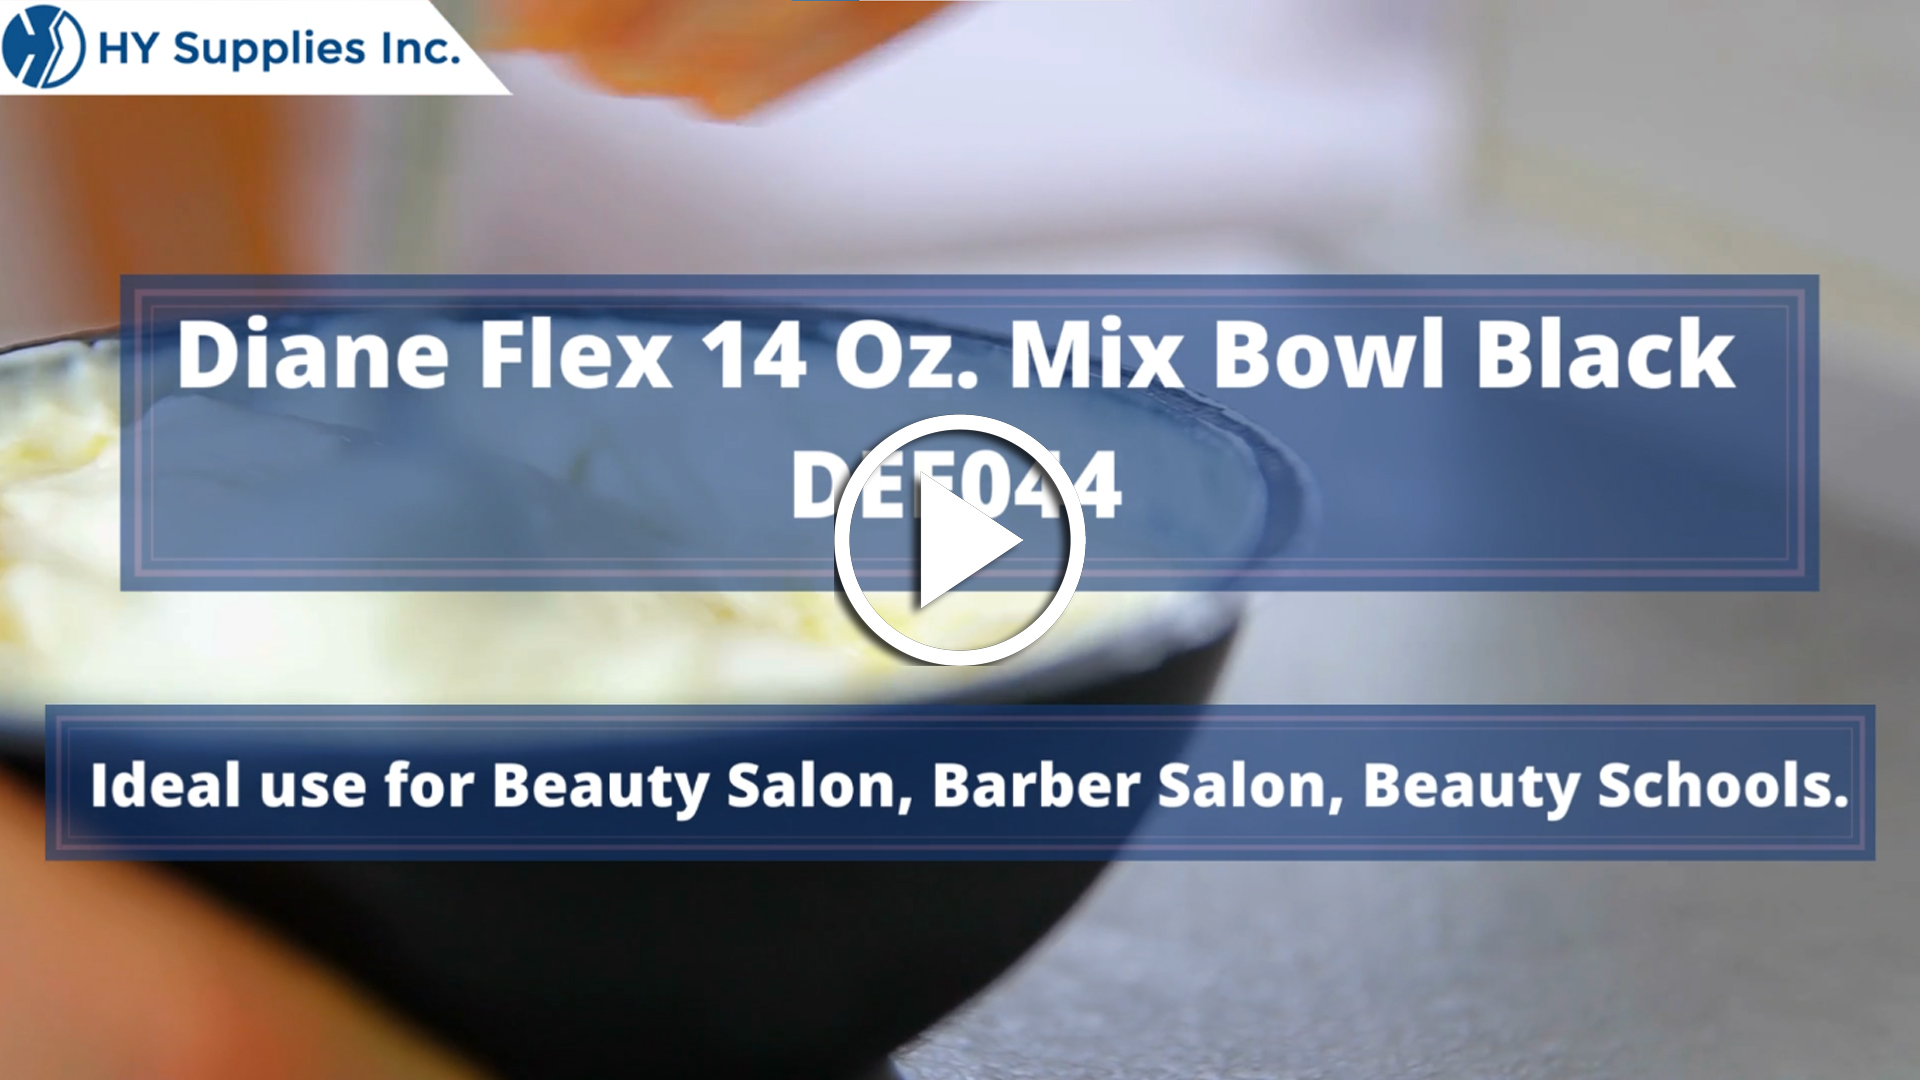 Diane Flex 14 Oz. Mix Bowl Black #DEE044